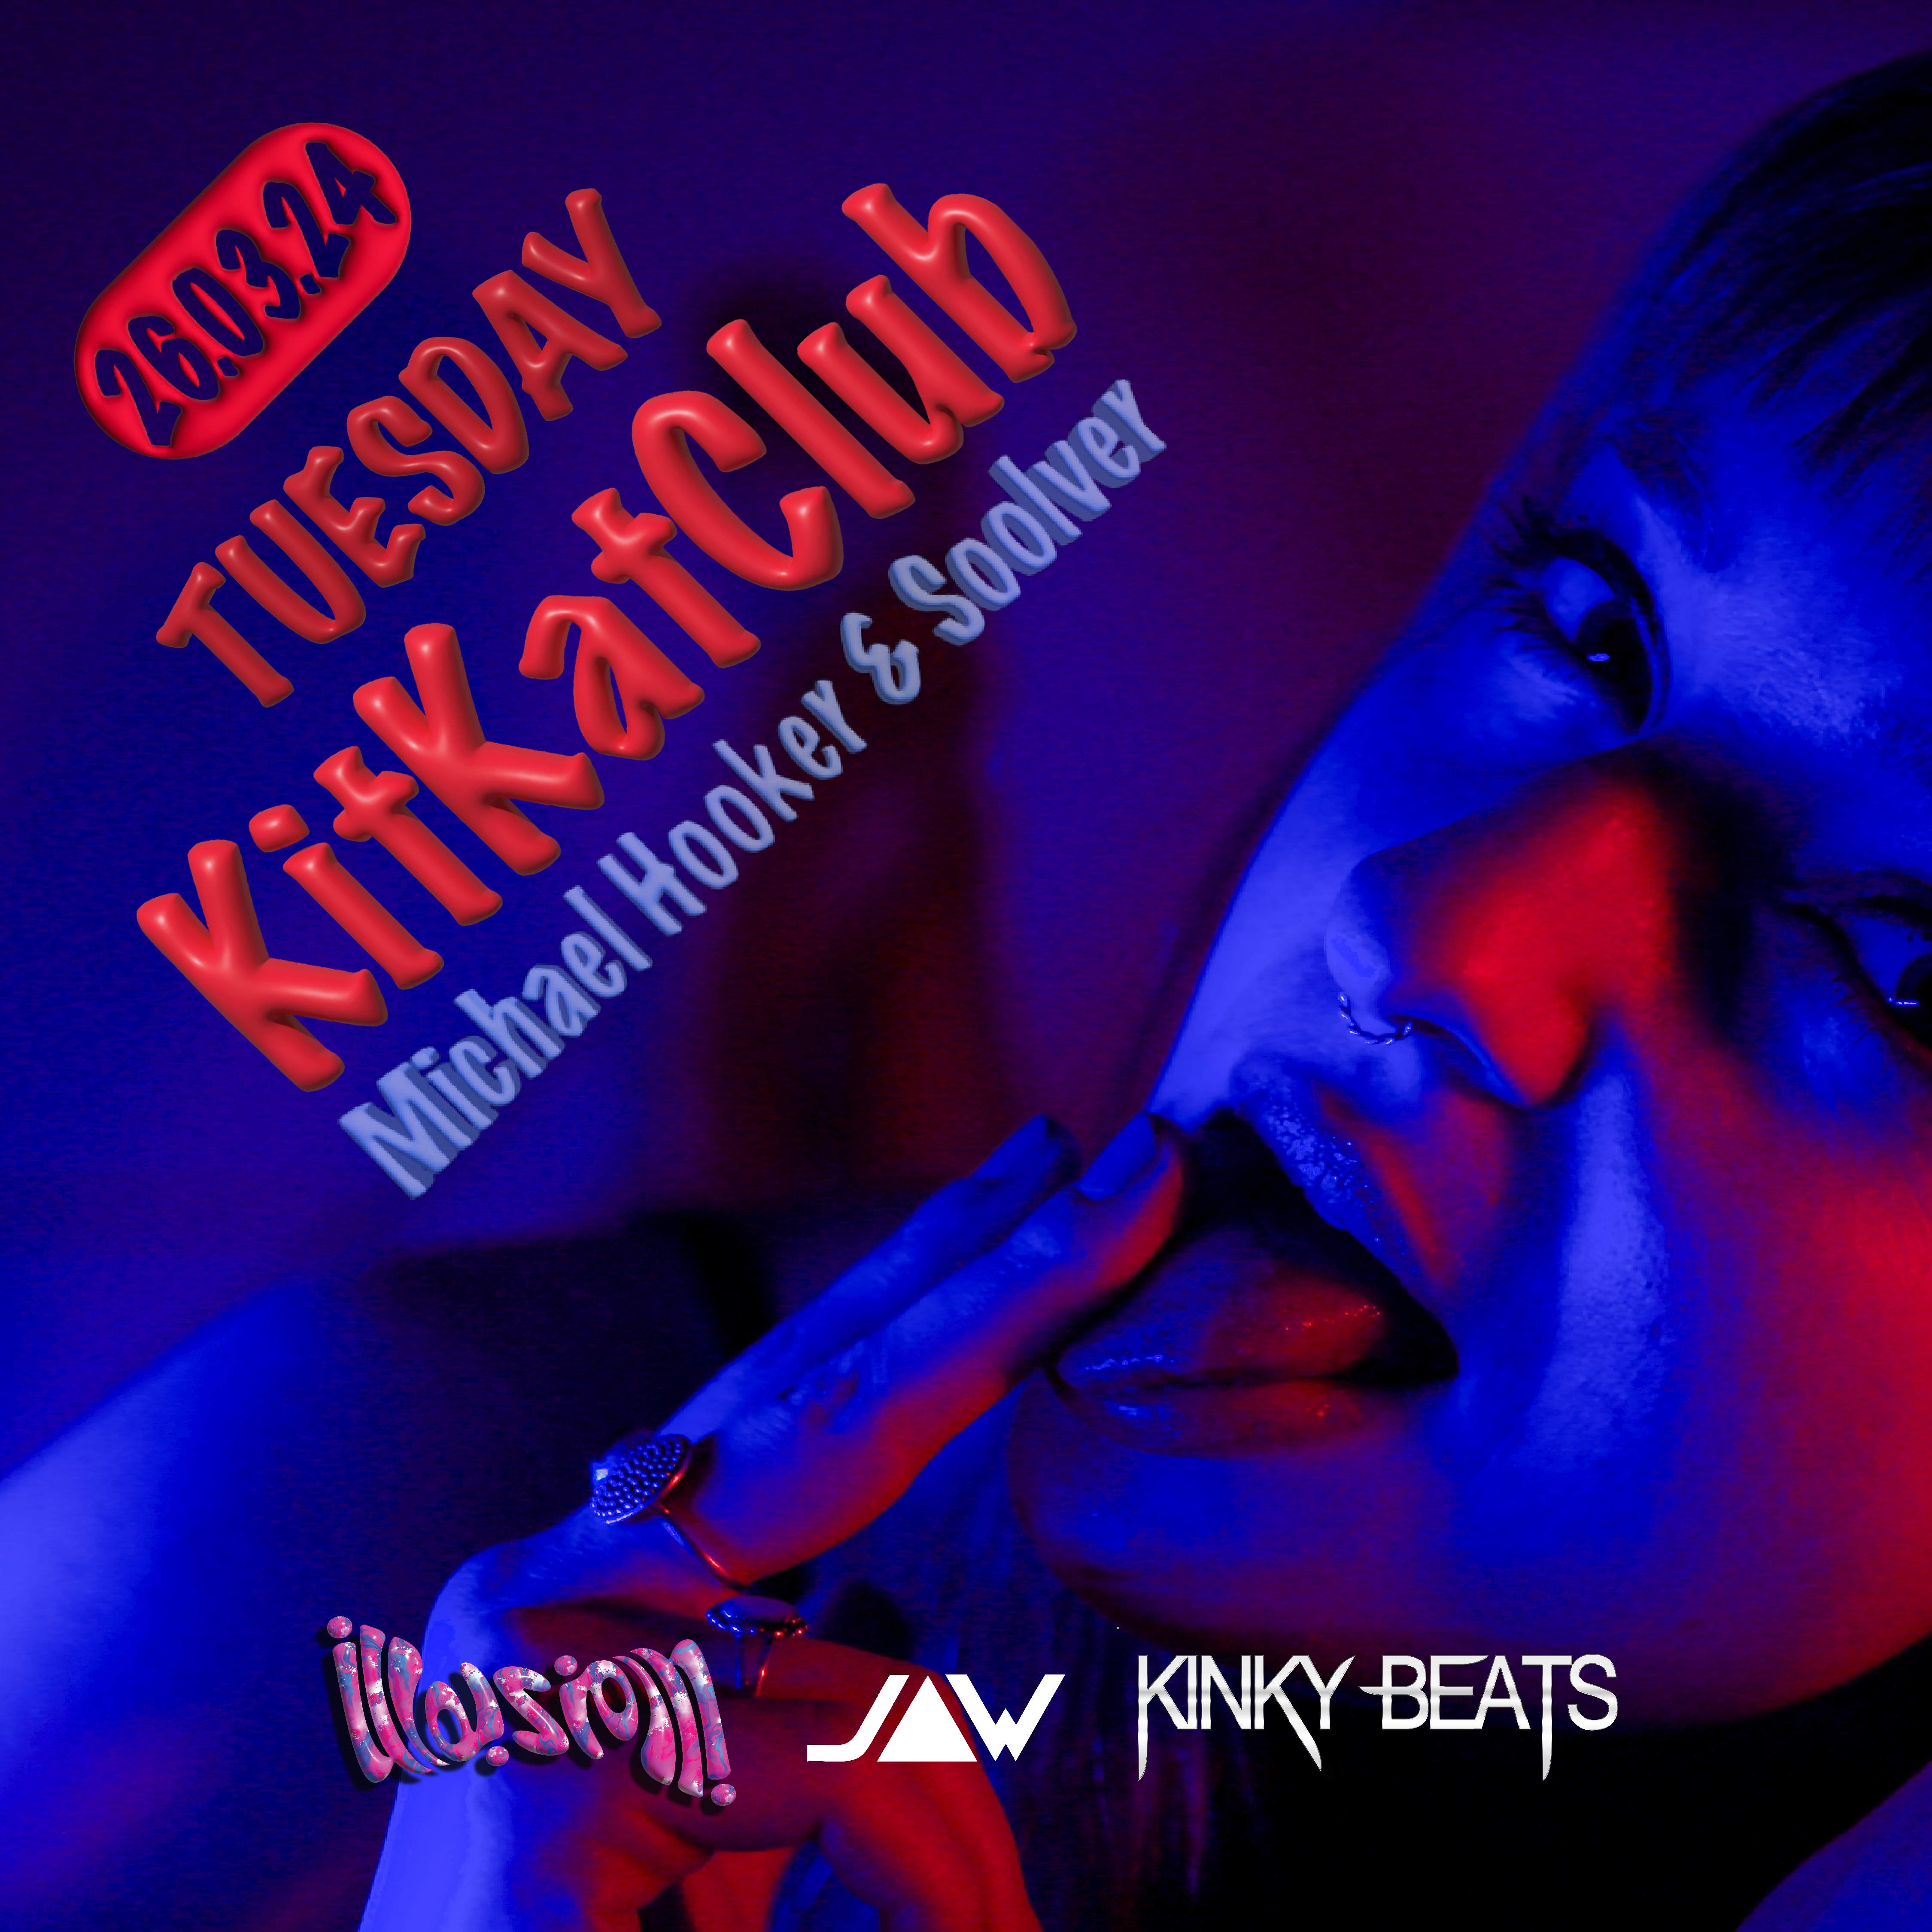 ILLUSION x KinkyBeats at KitKat Club - フライヤー表